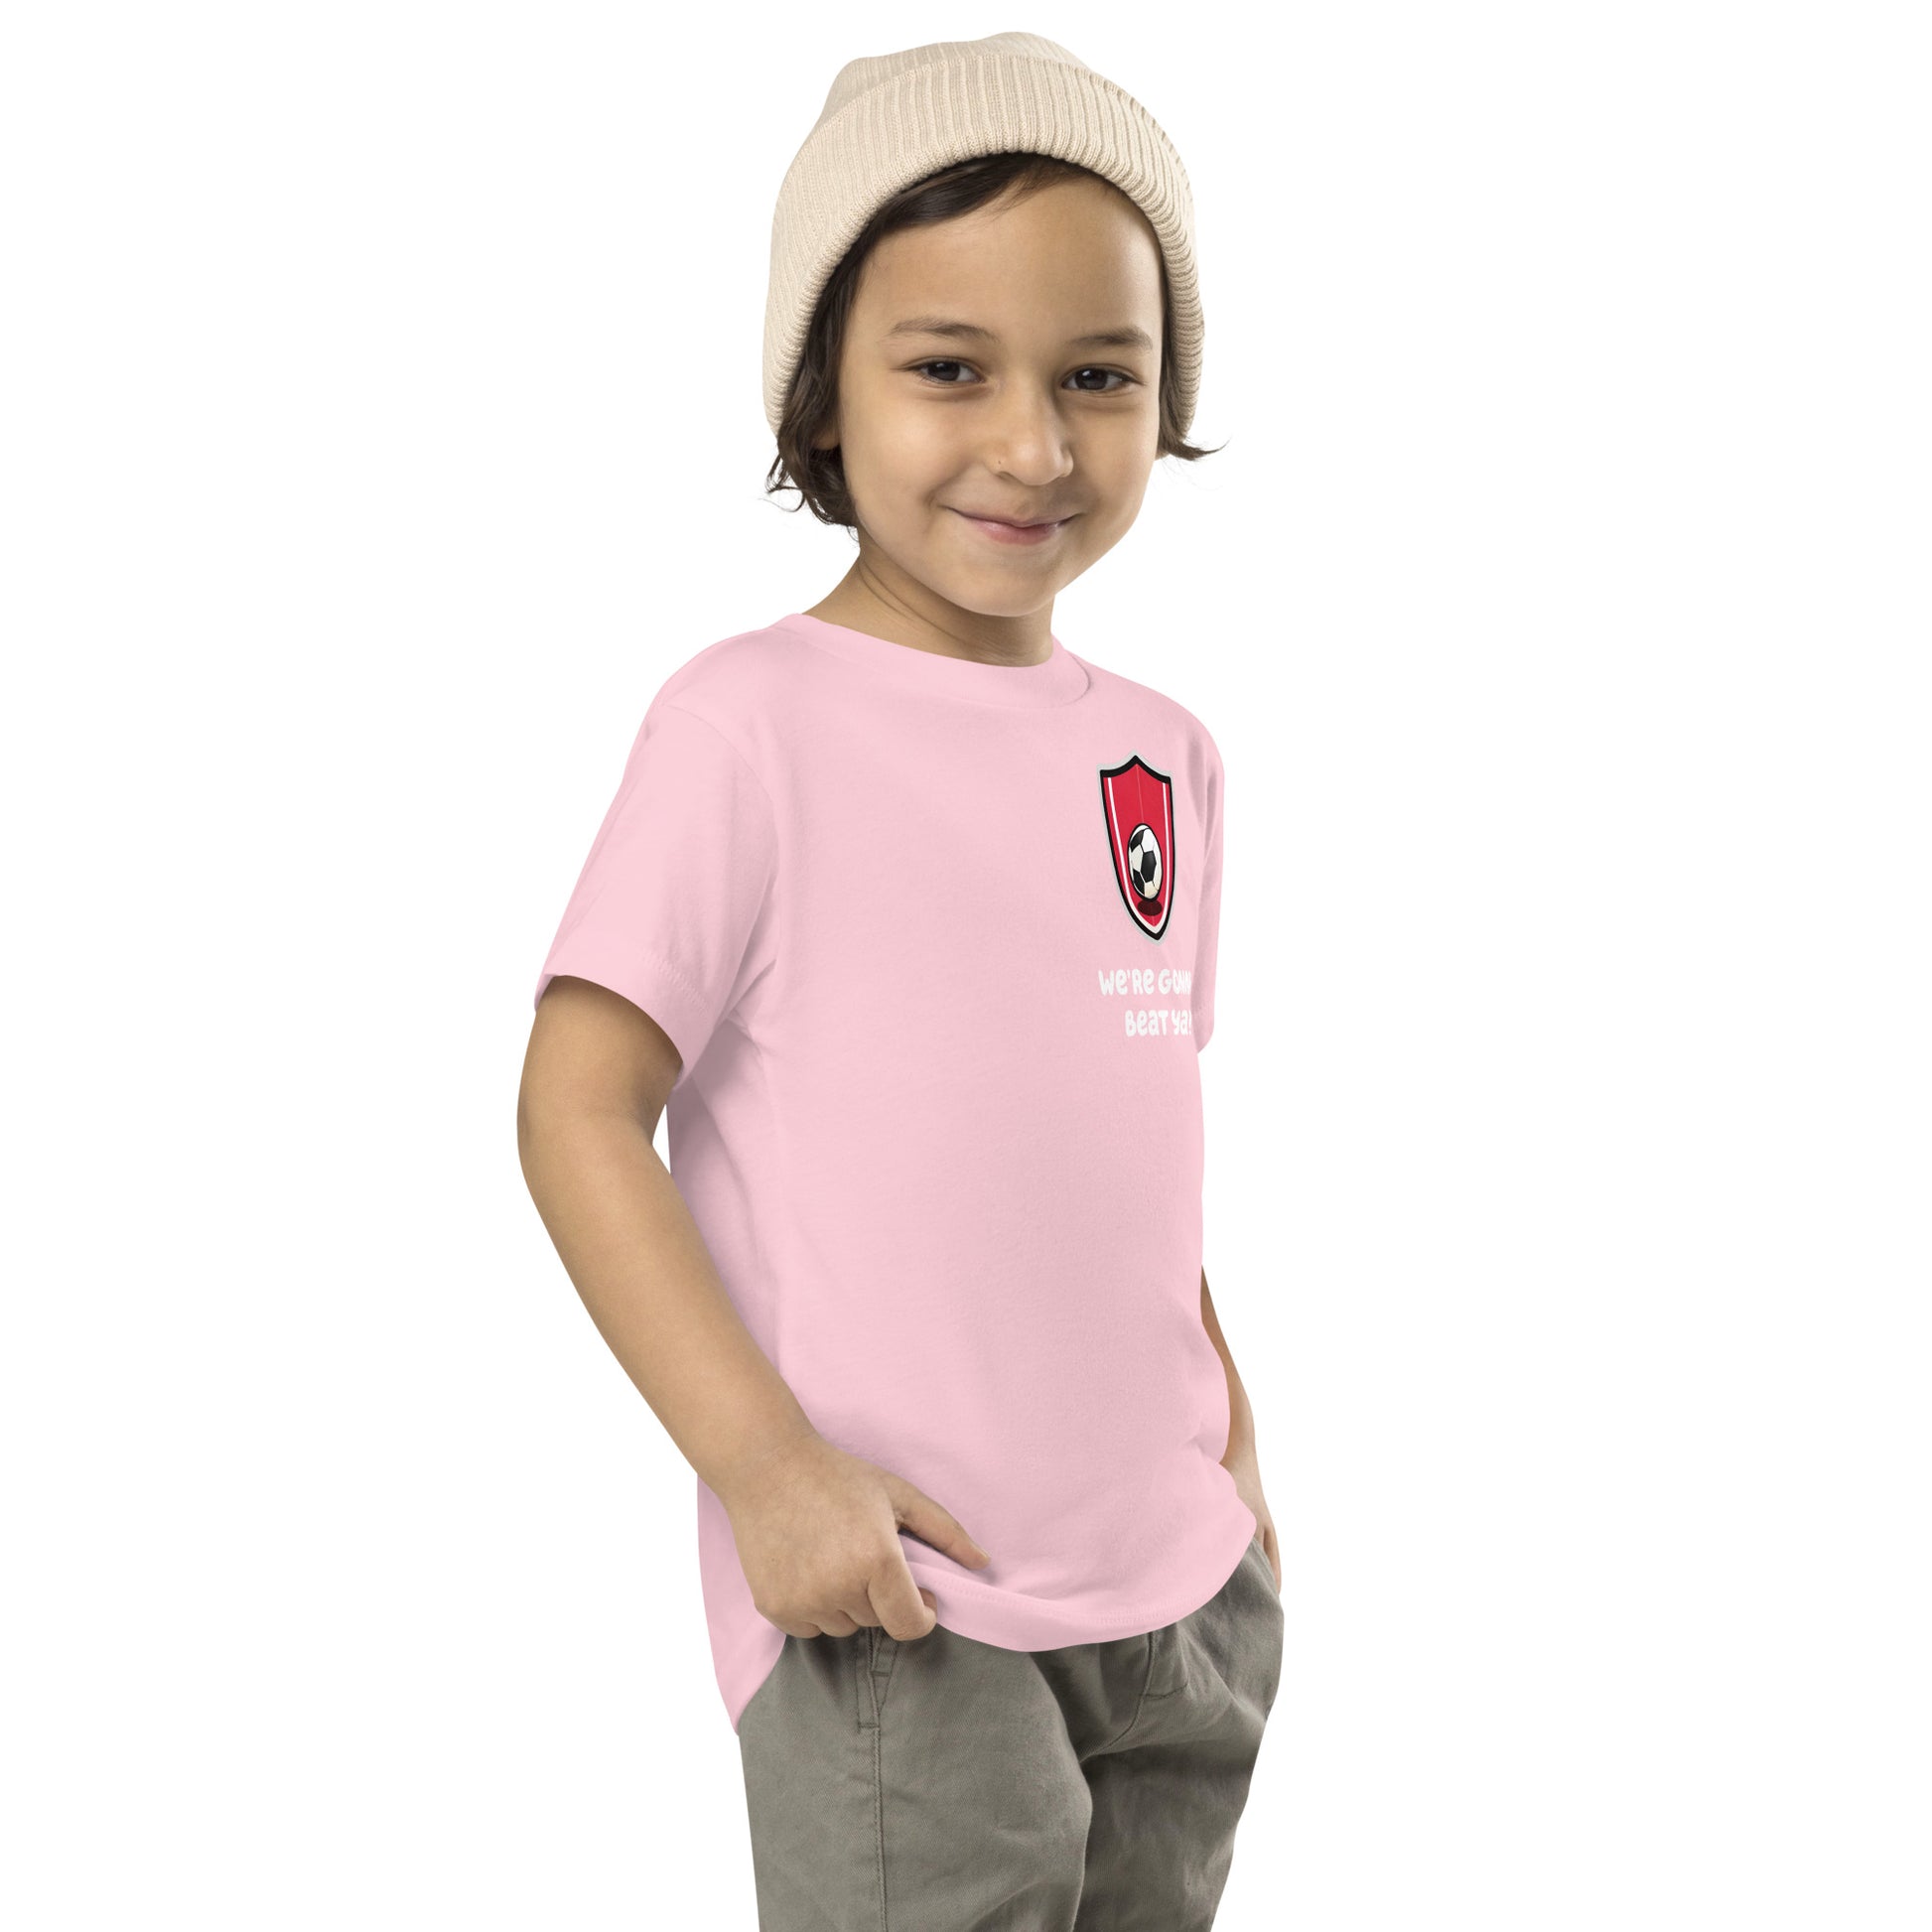 boy smirking while wearing Bluey Team Mom pink shirt